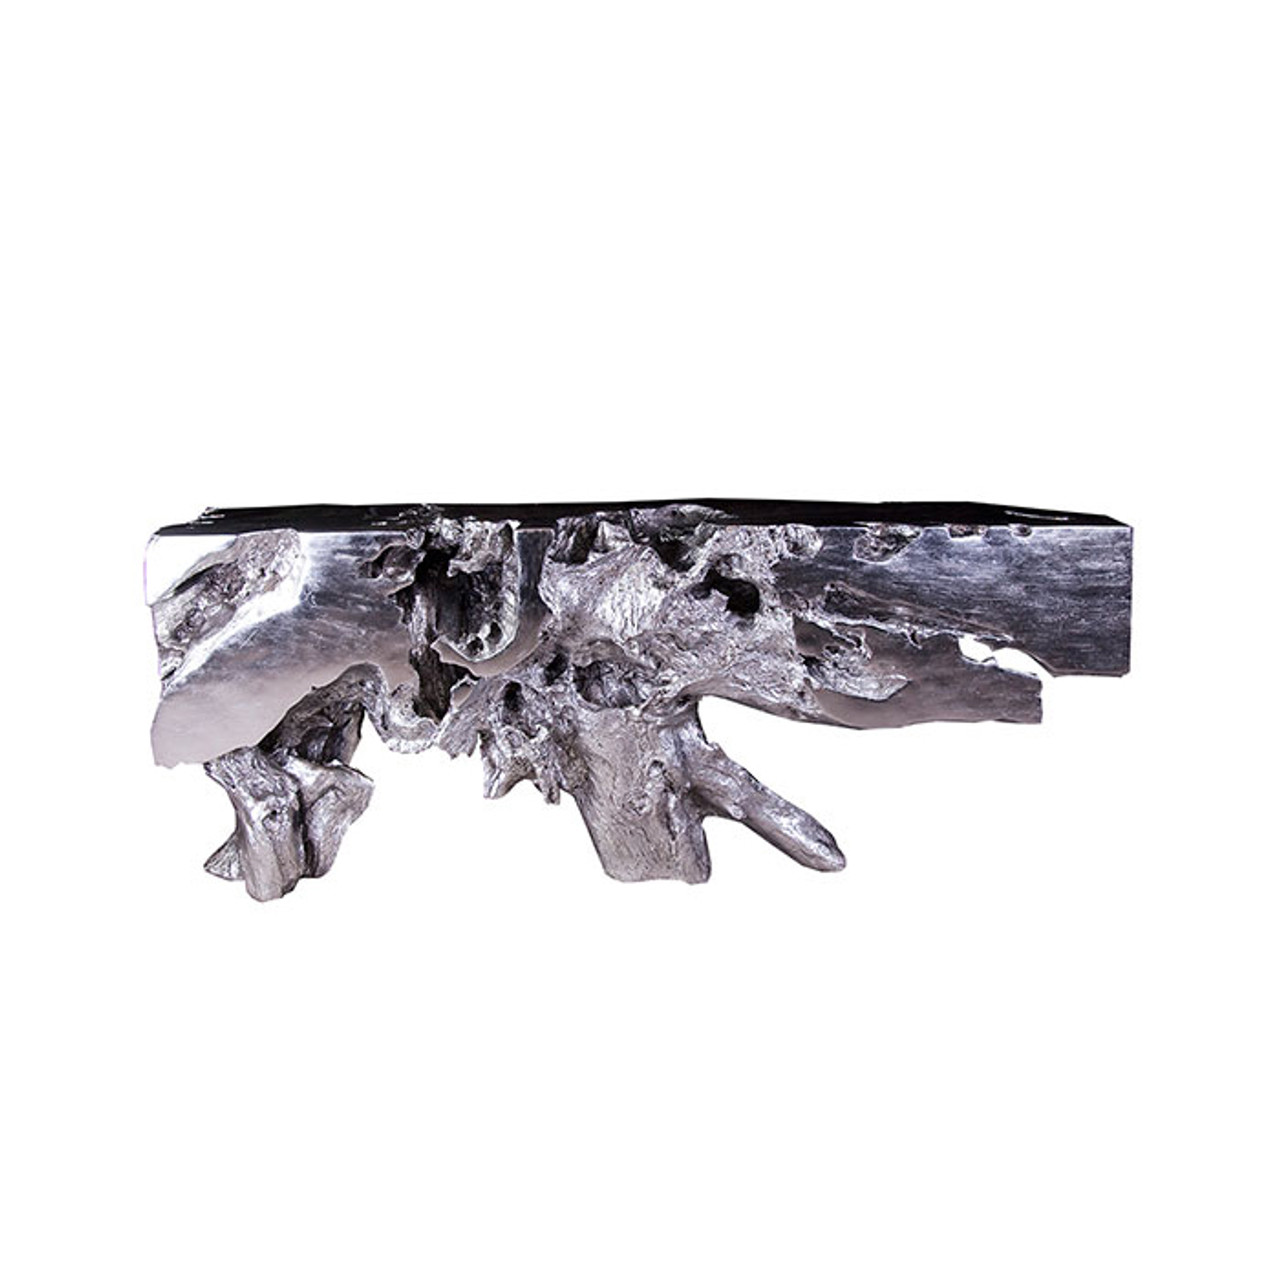 Somerset Rectangle Picture Frame - Silver Leaf Black